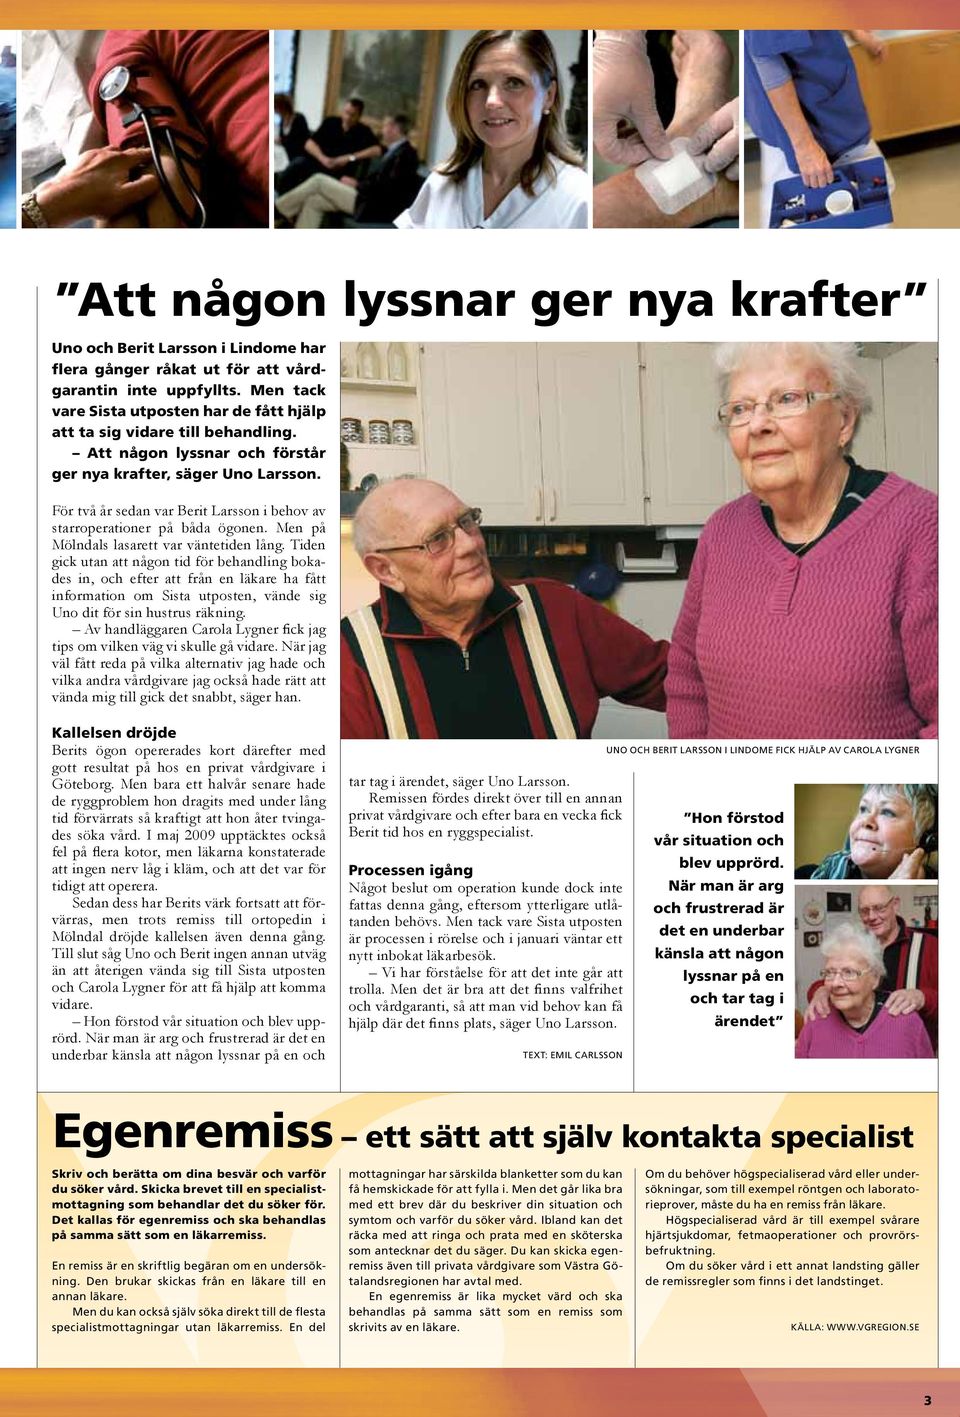 För två år sedan var Berit Larsson i behov av starroperationer på båda ögonen. Men på Mölndals lasarett var väntetiden lång.